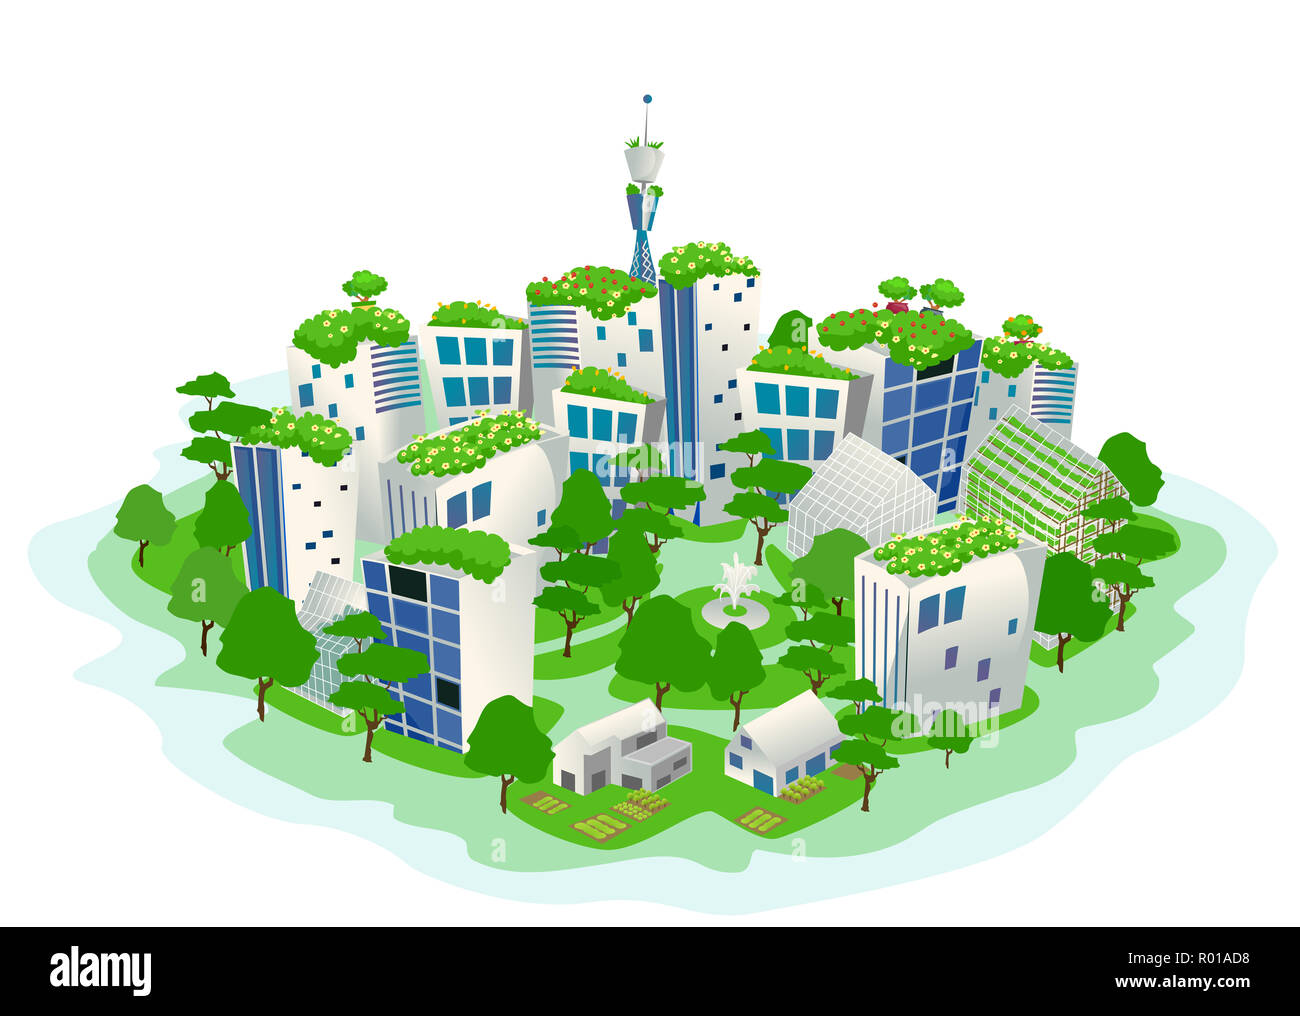 Abbildung eines grünen und nachhaltigen Stadt mit Bäumen, Gewächshäuser und Parks Stockfoto